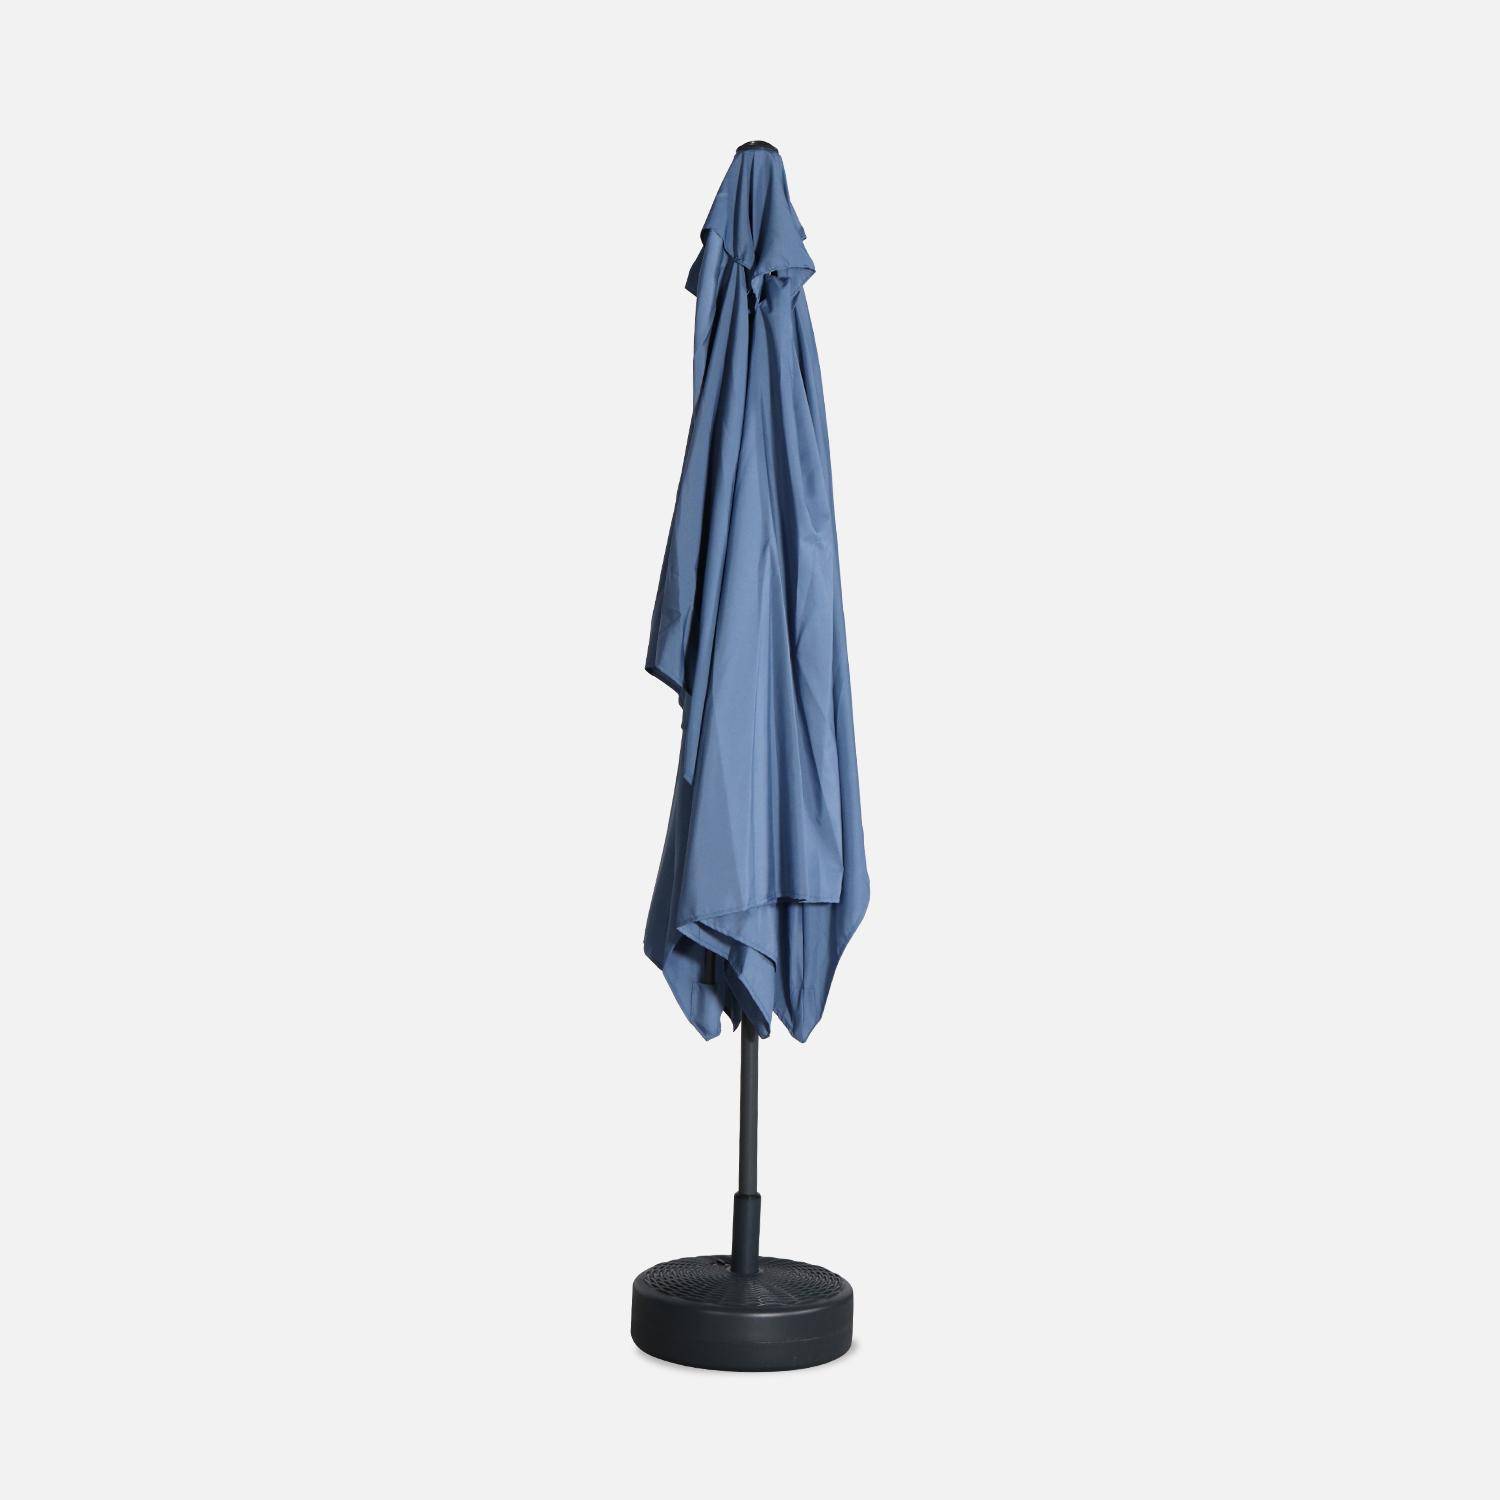 Parasol droit rectangulaire 2x3m - Touquet bleu grisé - mât central en aluminium orientable et manivelle d'ouverture,sweeek,Photo4